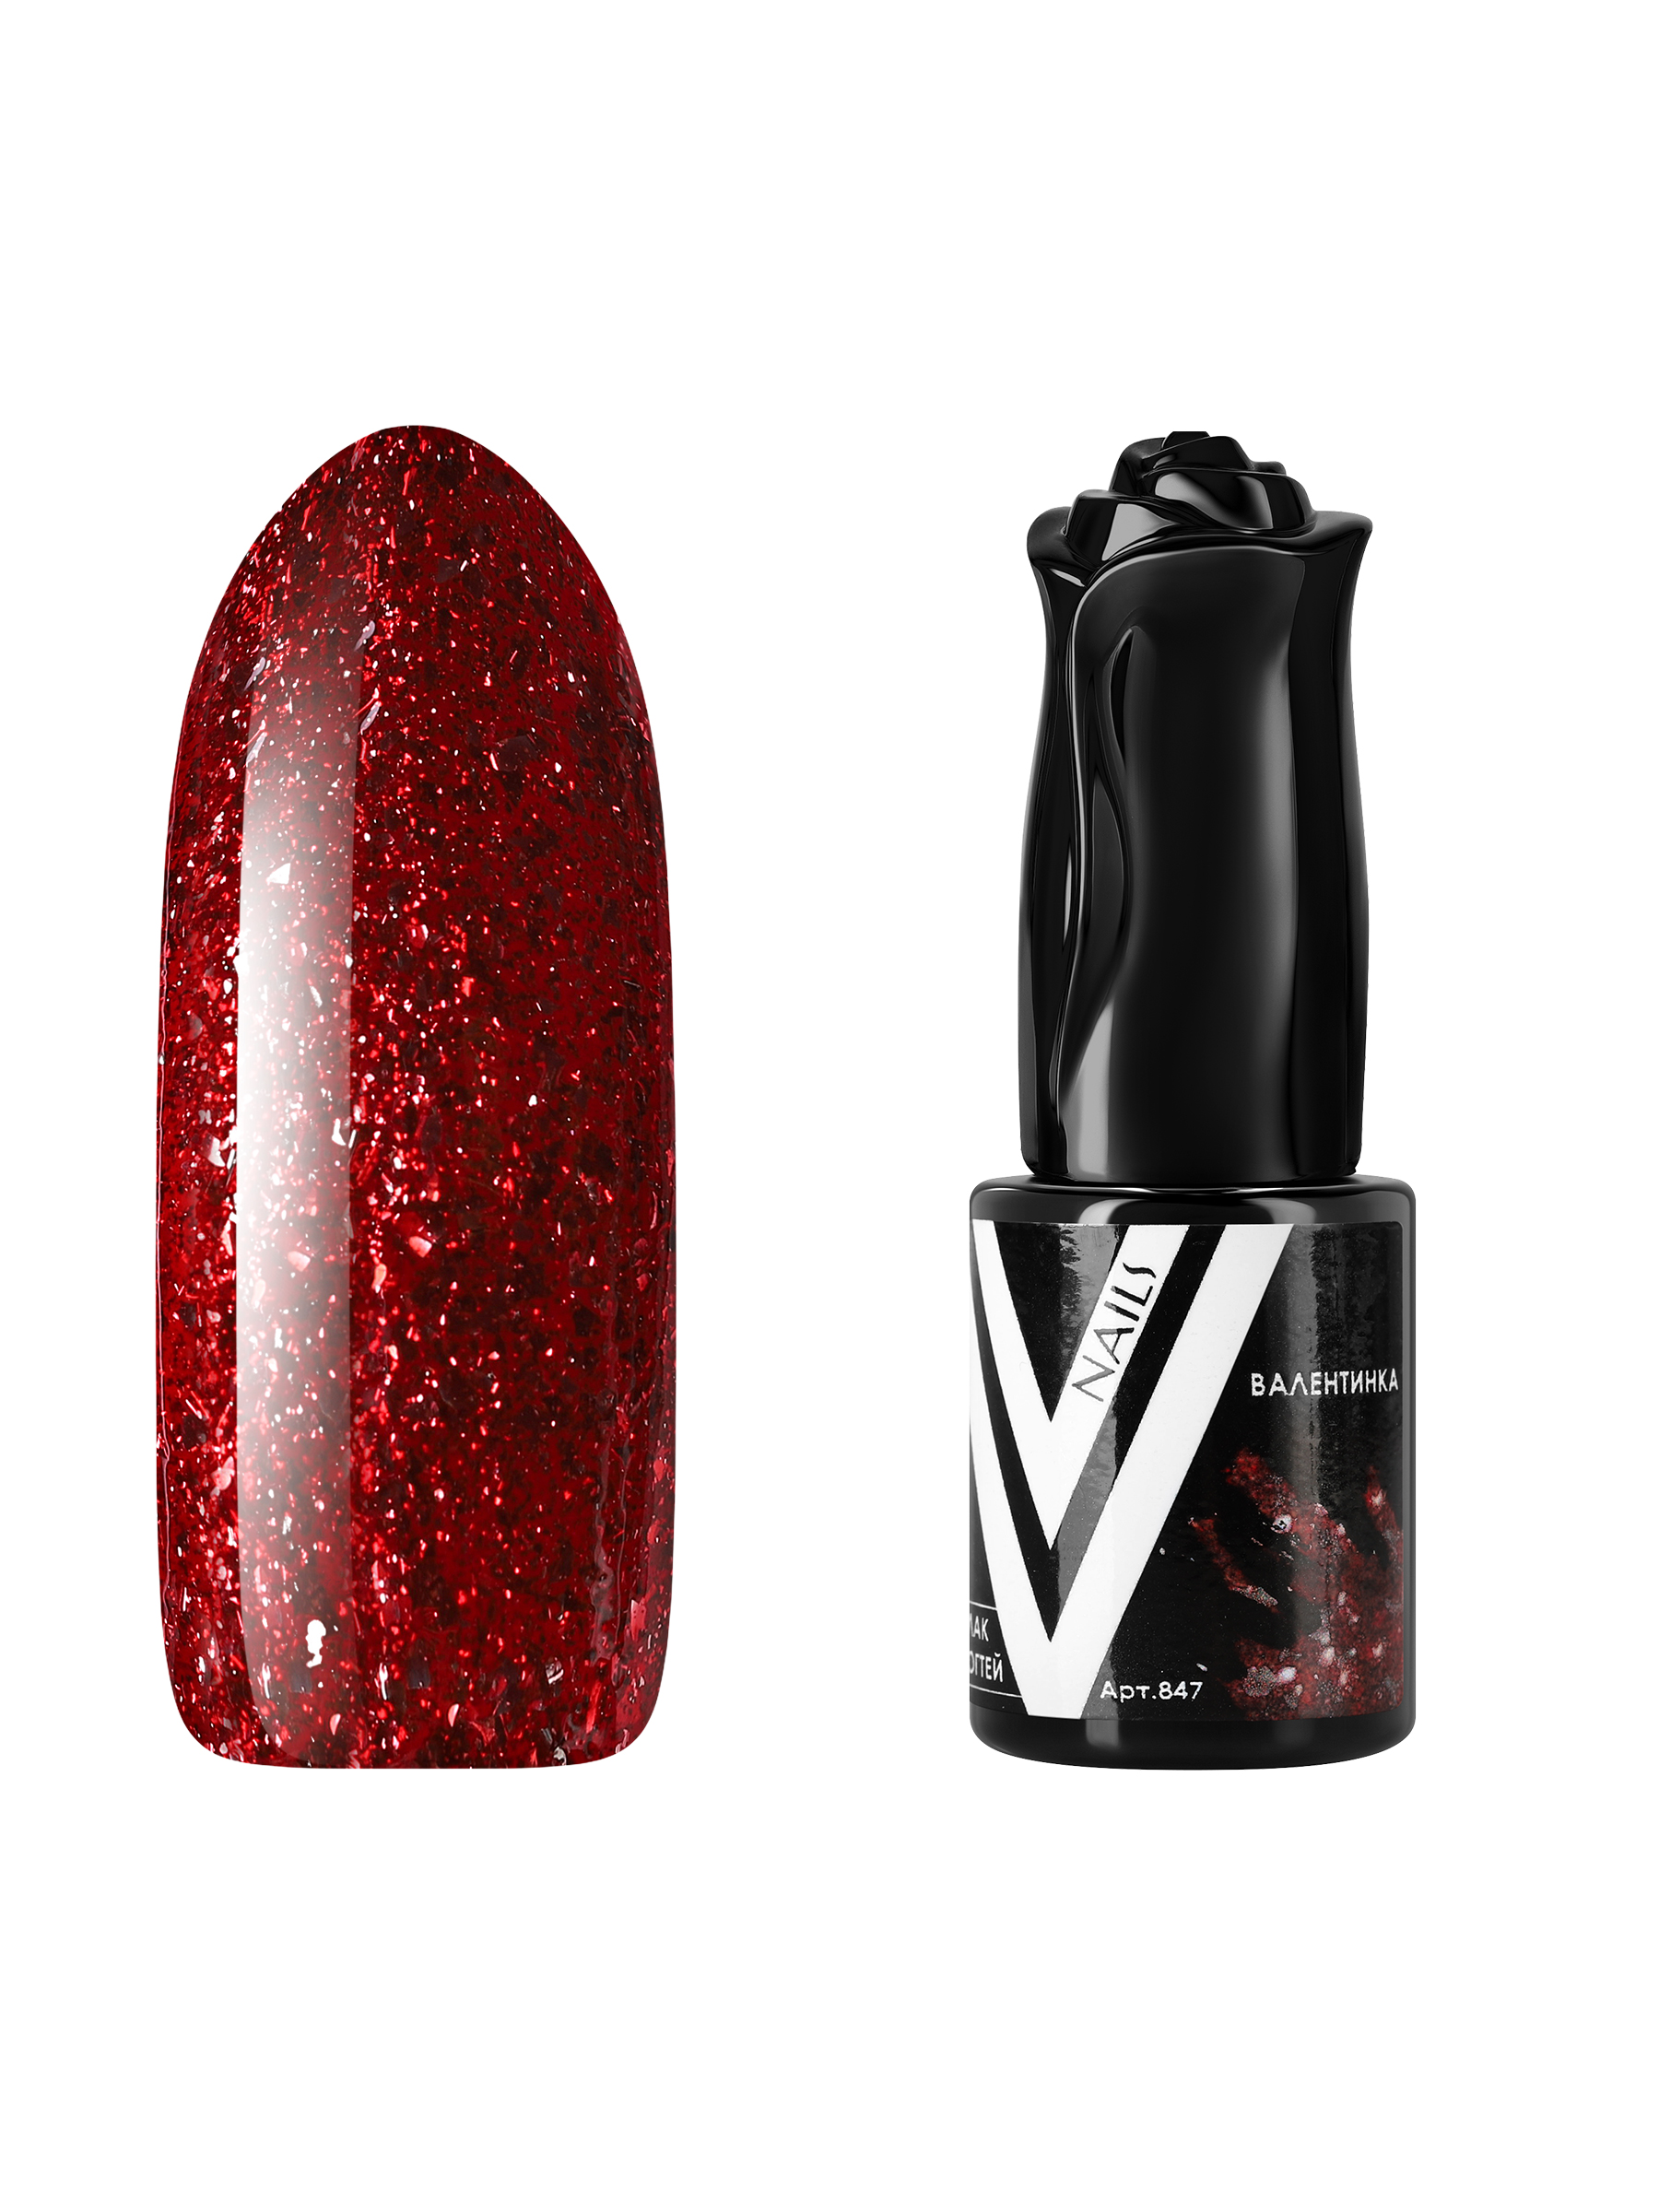 Гель-лак для ногтей с блестками Vogue Nails плотный, насыщенный, темный, красный, 10 мл темный пористый шоколад красный октябрь с хрустящими криспами лайма 75 гр